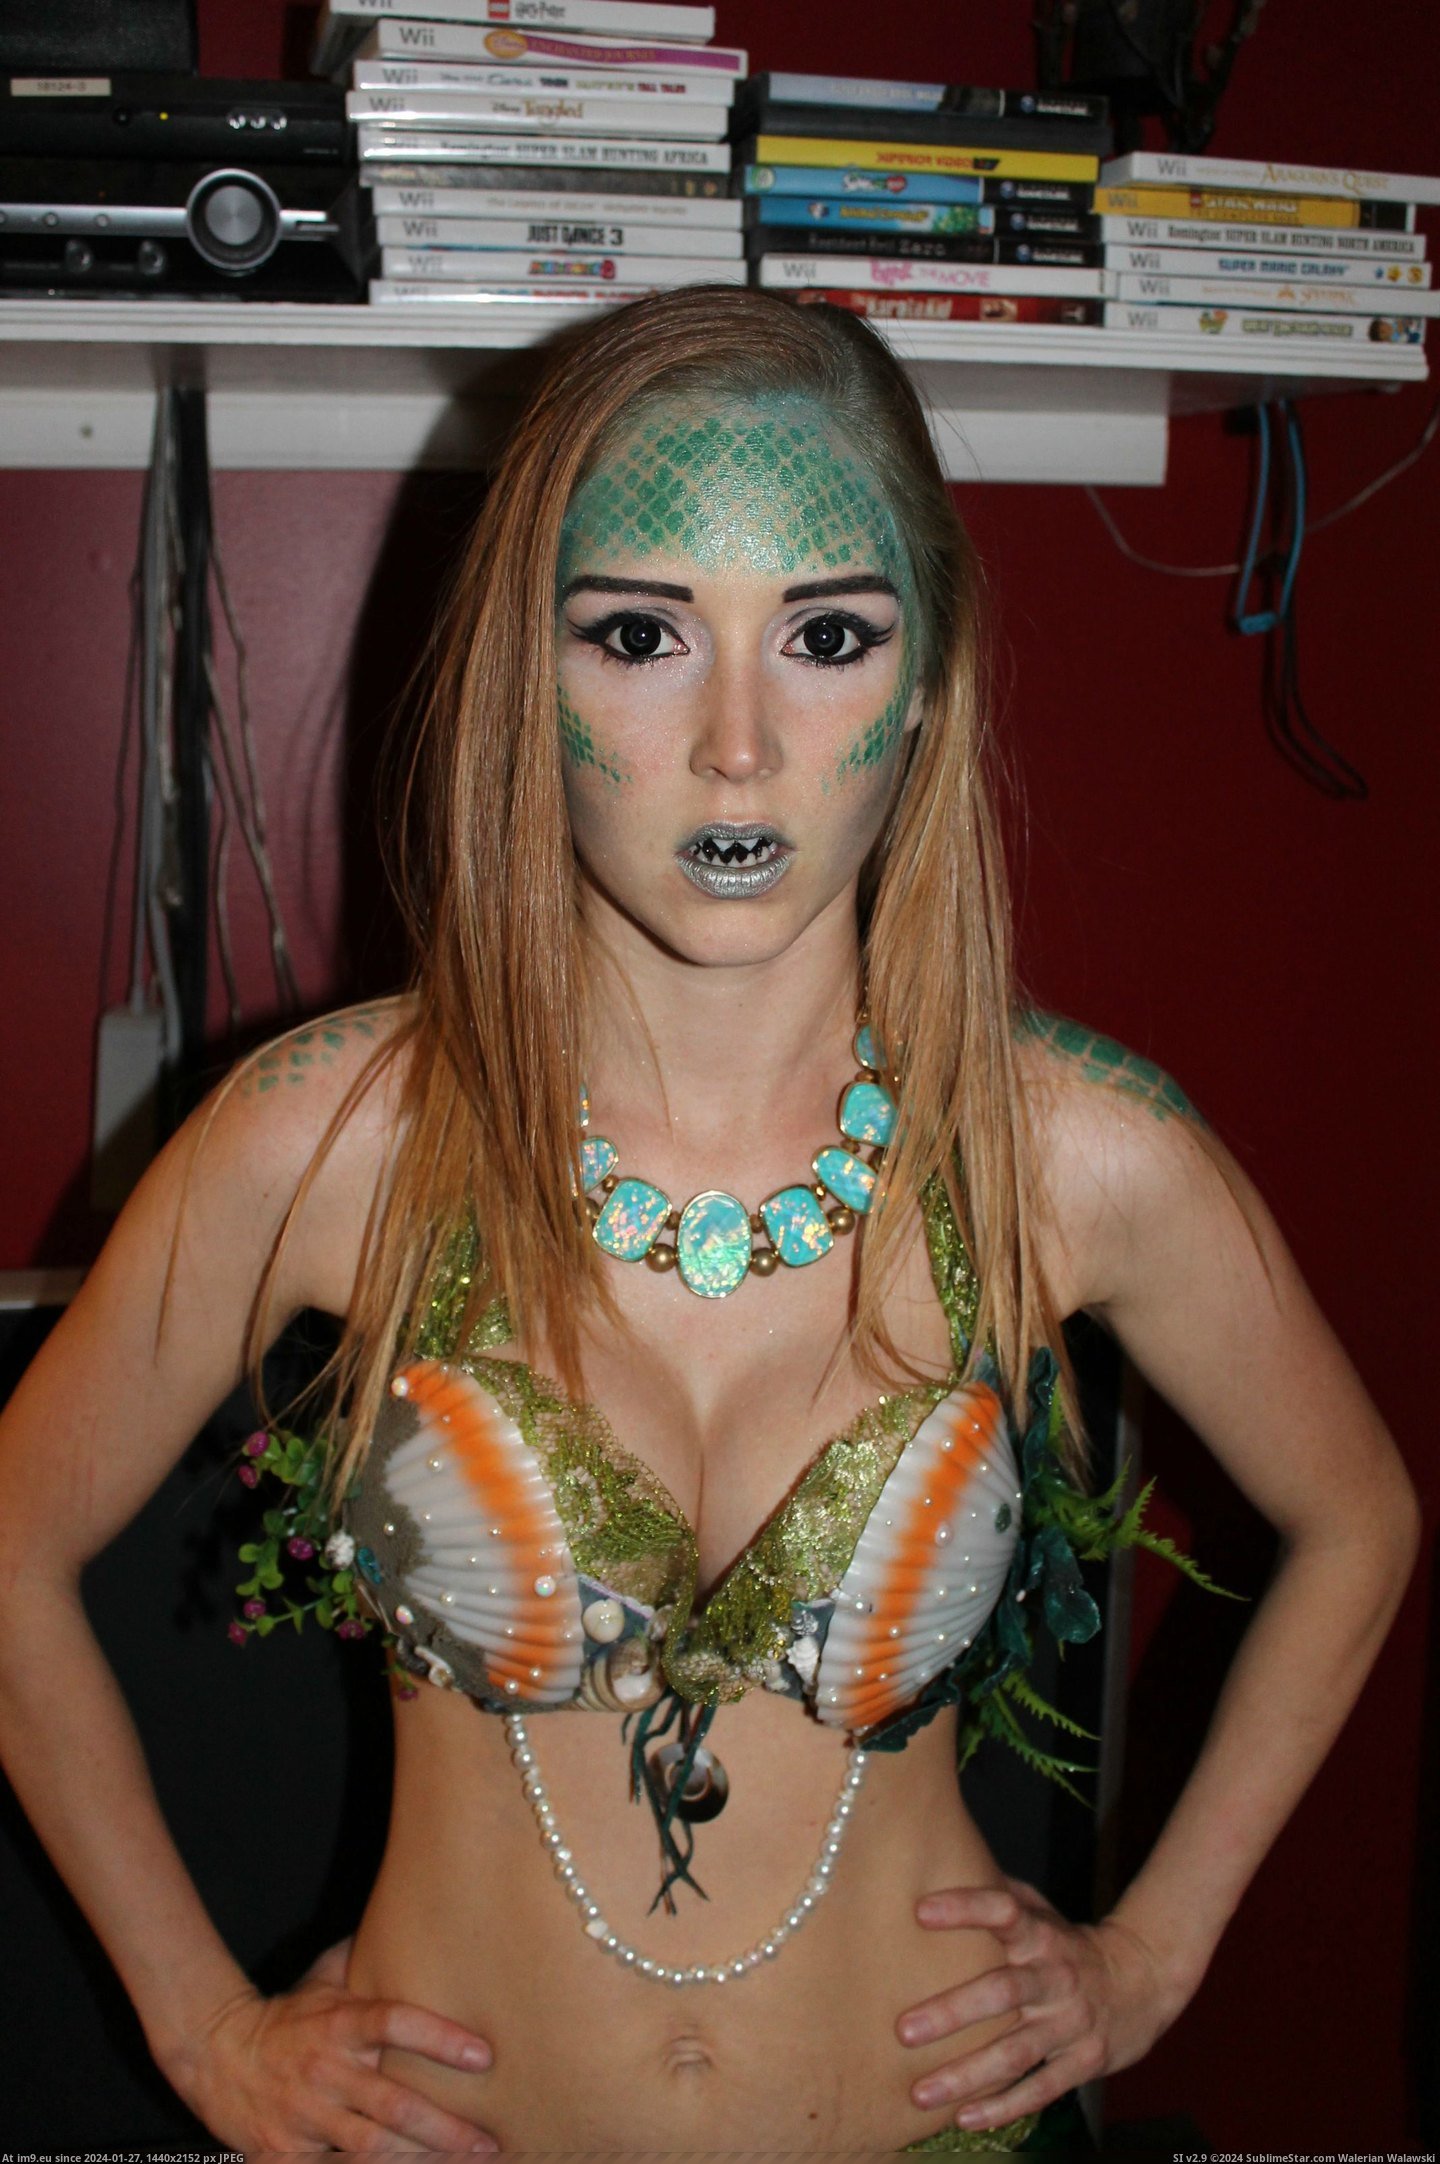 #Costume #Homemade #Mermaid [Pics] My homemade mermaid costume! 4 Pic. (Image of album My r/PICS favs))